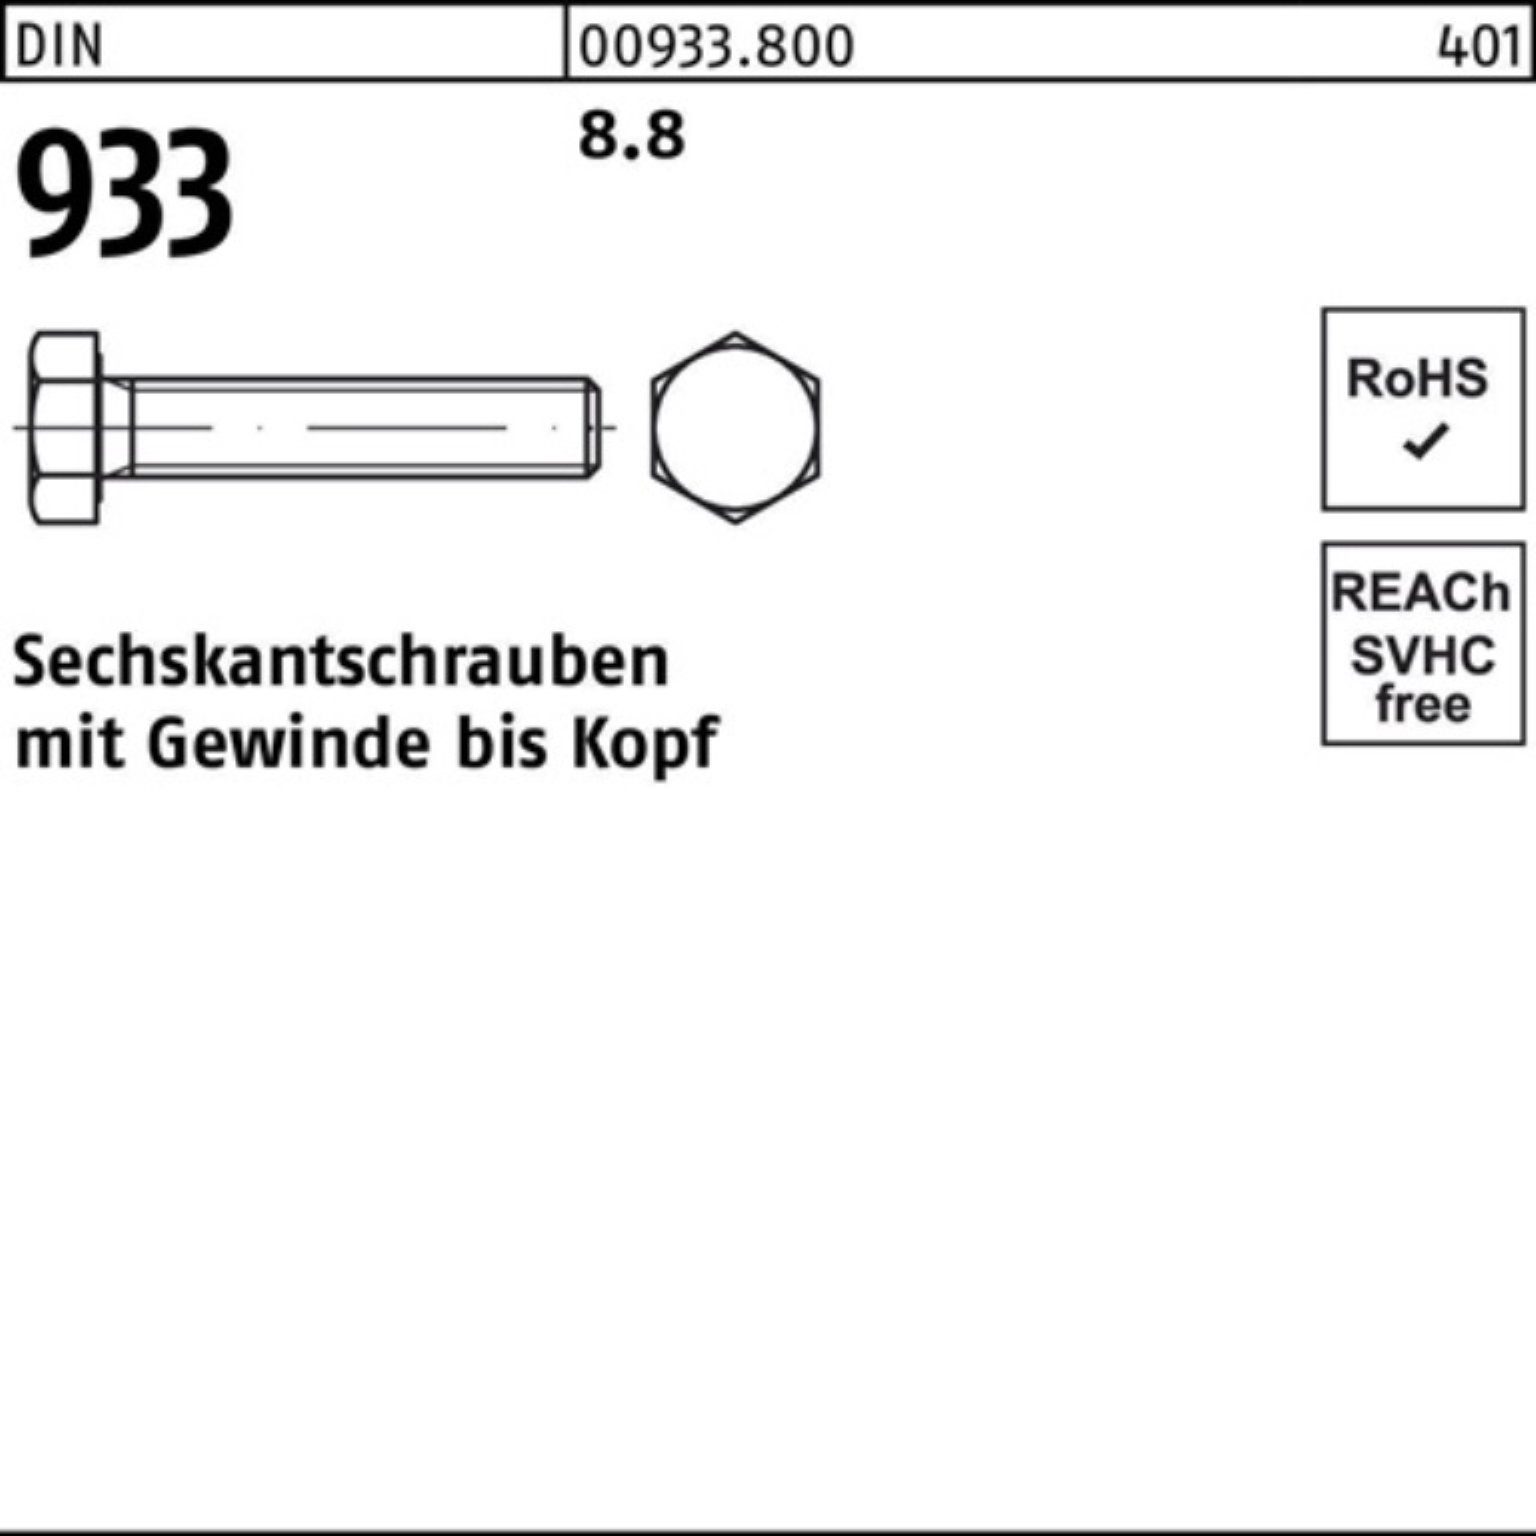 Reyher Sechskantschraube 100er Pack Sechskantschraube VG M30x DIN 933 230 8.8 933 1 DIN Stück